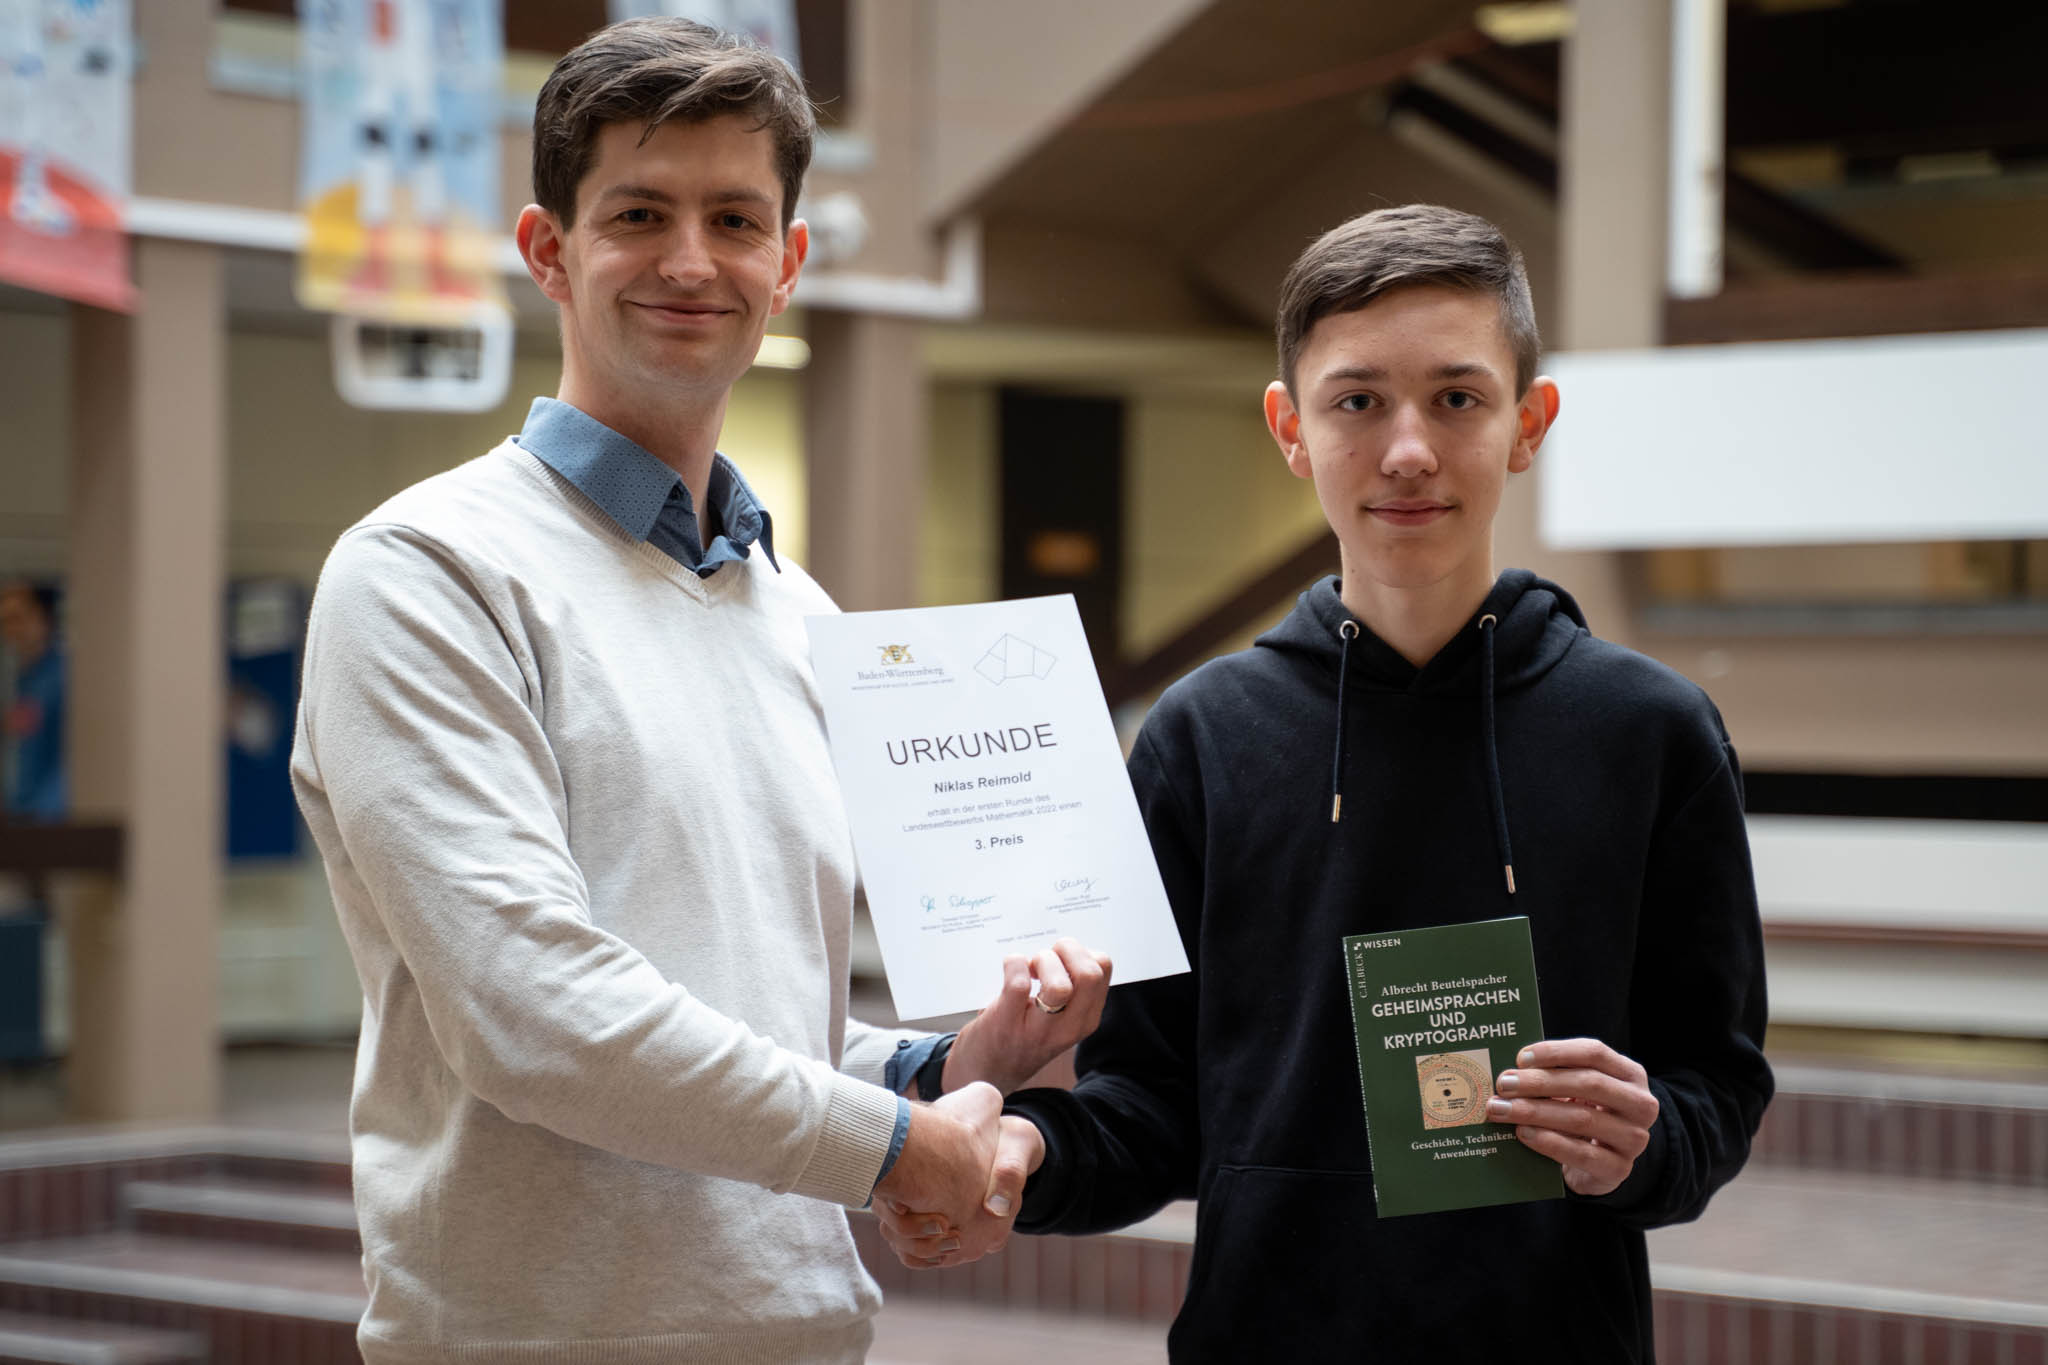 Mathematiklehrer Alexander Berchtold gratuliert Niklas Reimold zu seinem Erfolg beim Landeswettbewerb Mathematik.